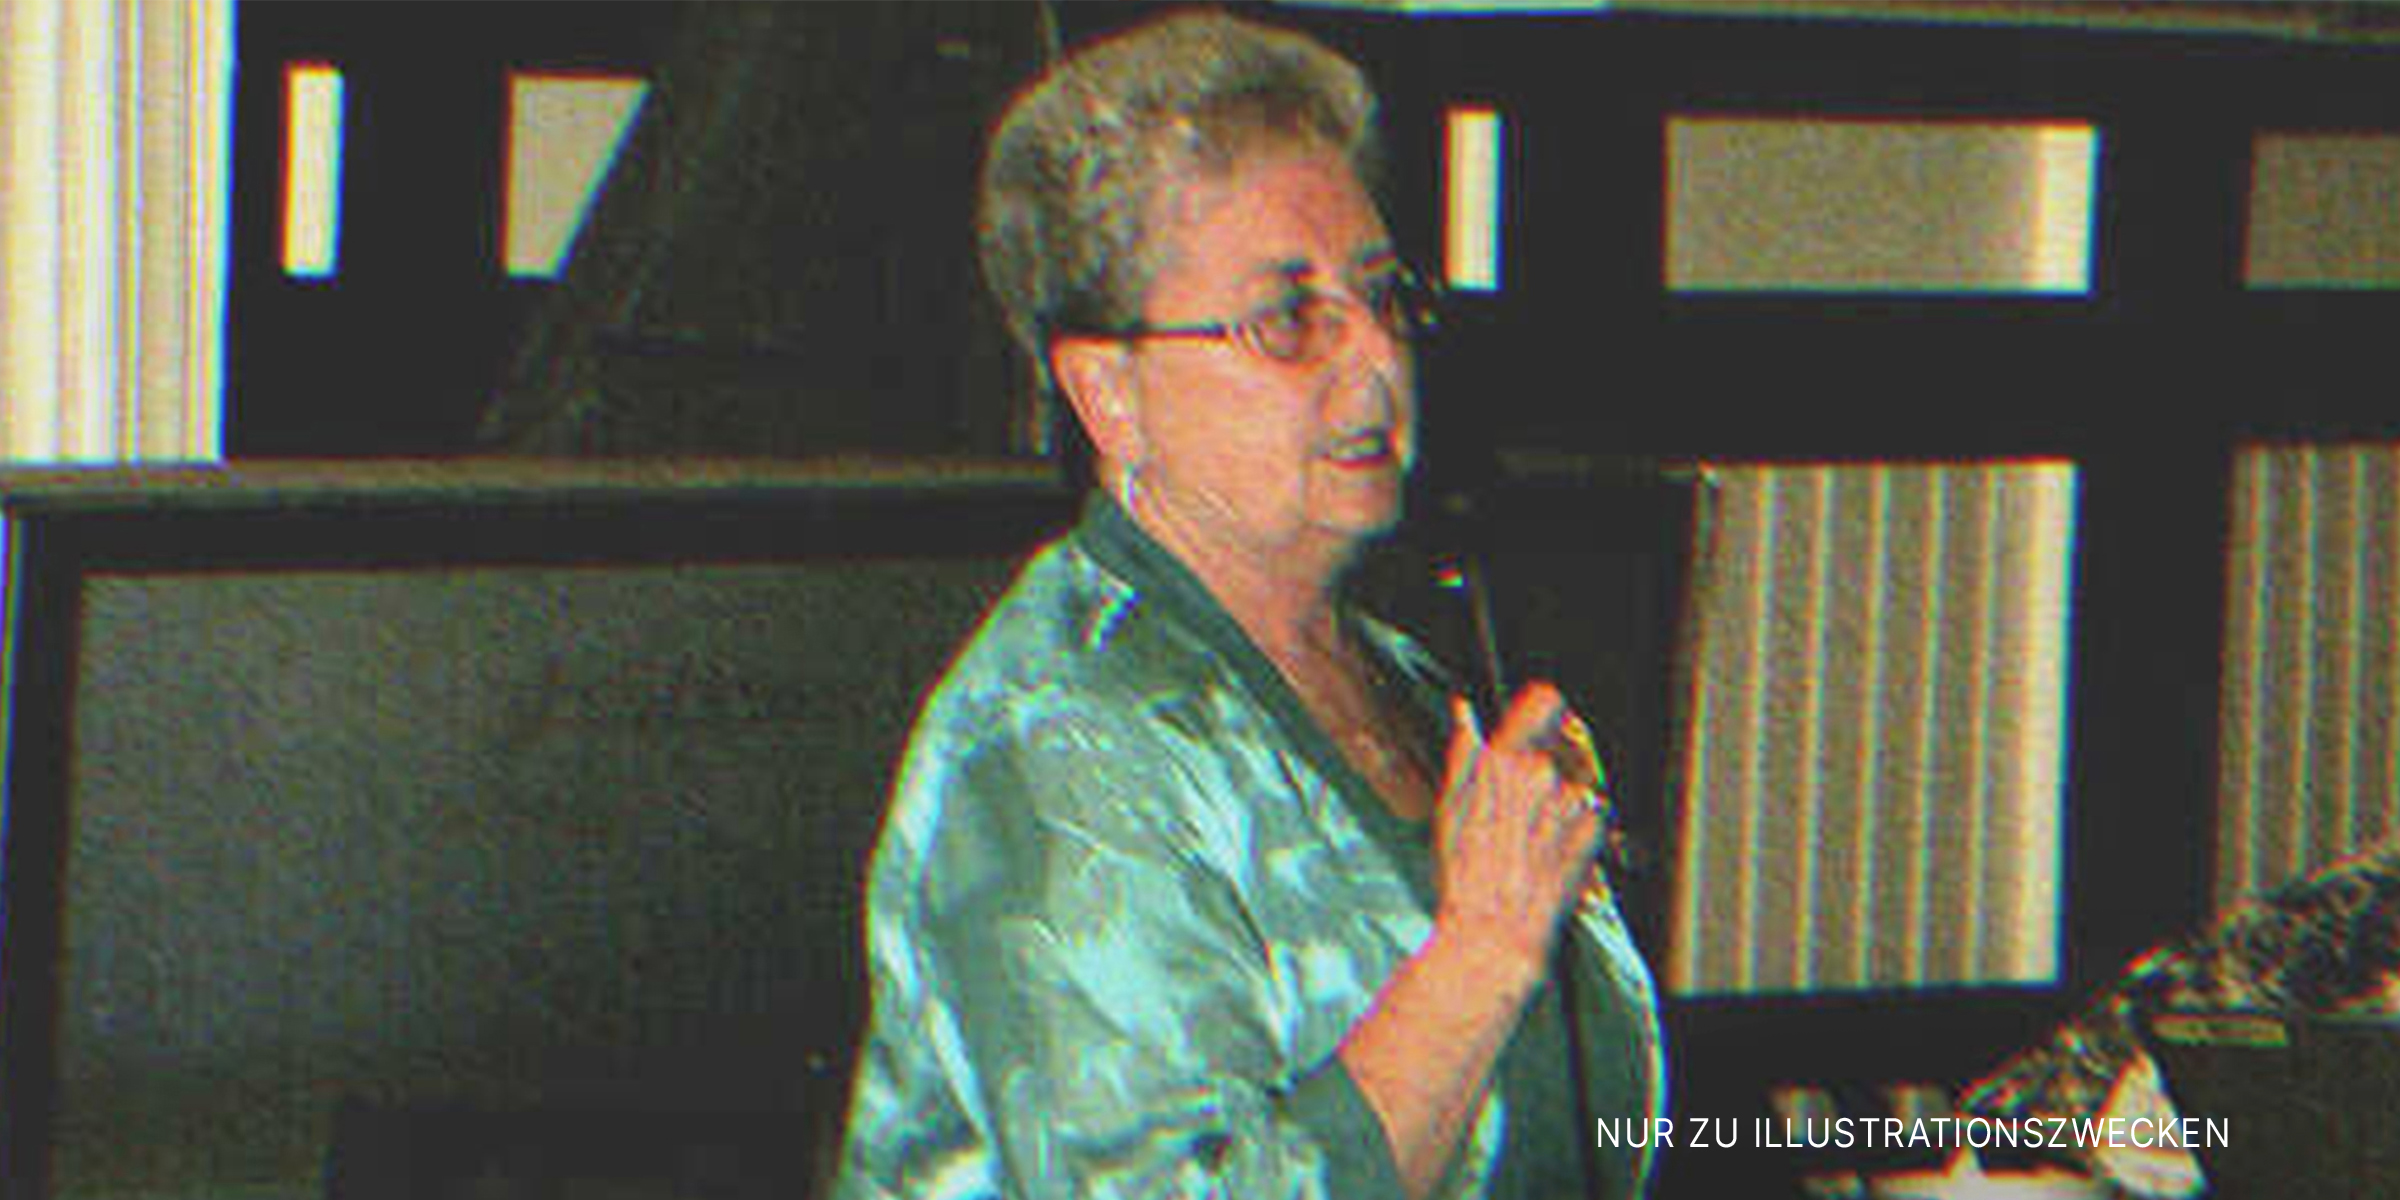 Eine Frau hält eine Rede. | Quelle: Flickr.com/bnilsen (CC BY-SA 2.0)